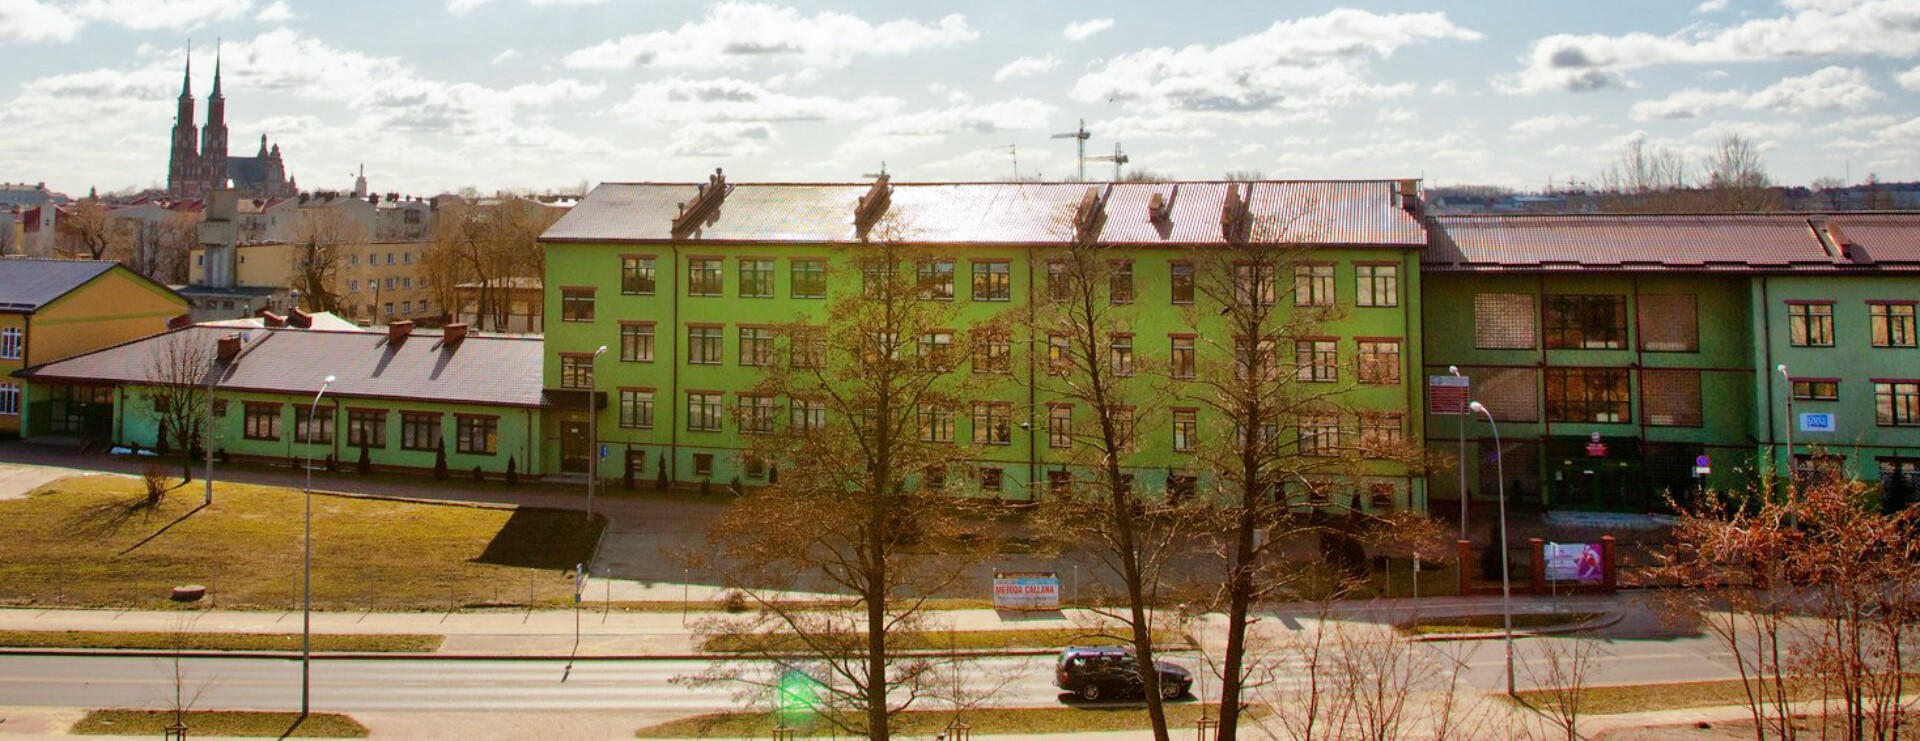 widok budynku szkoły od frontu